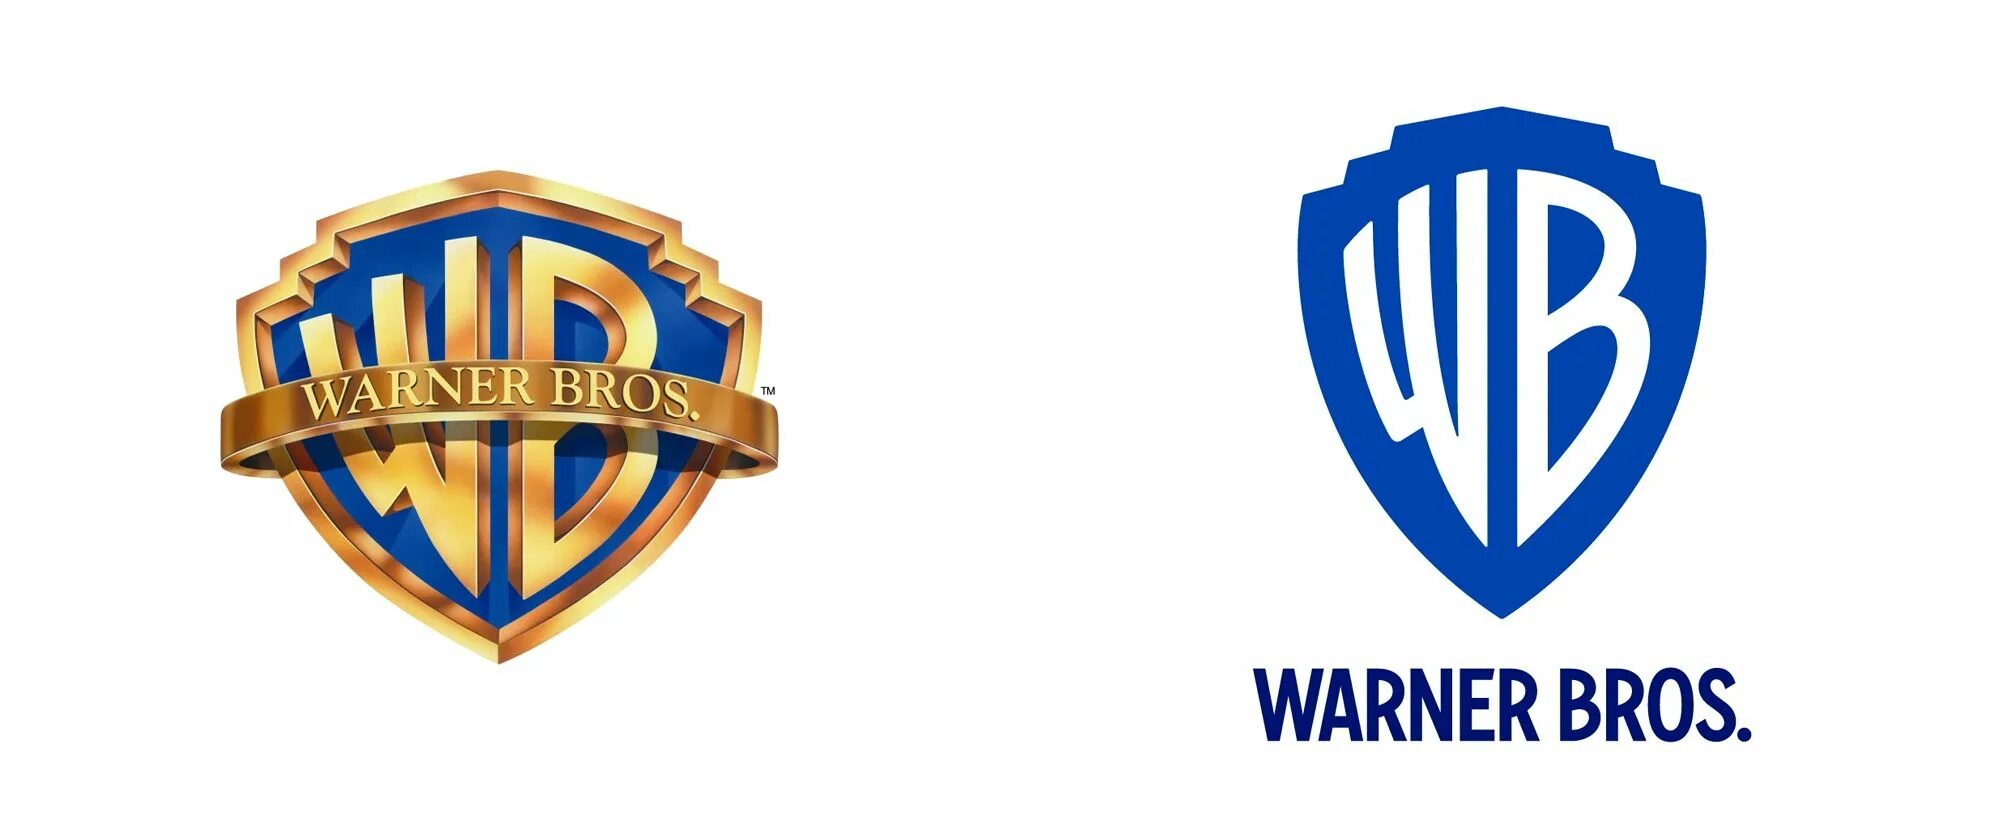 Варнер фф. Ворнер БРОС. WB логотип. Логотип ворнер бразерс. Кинокомпания Warner Bros.